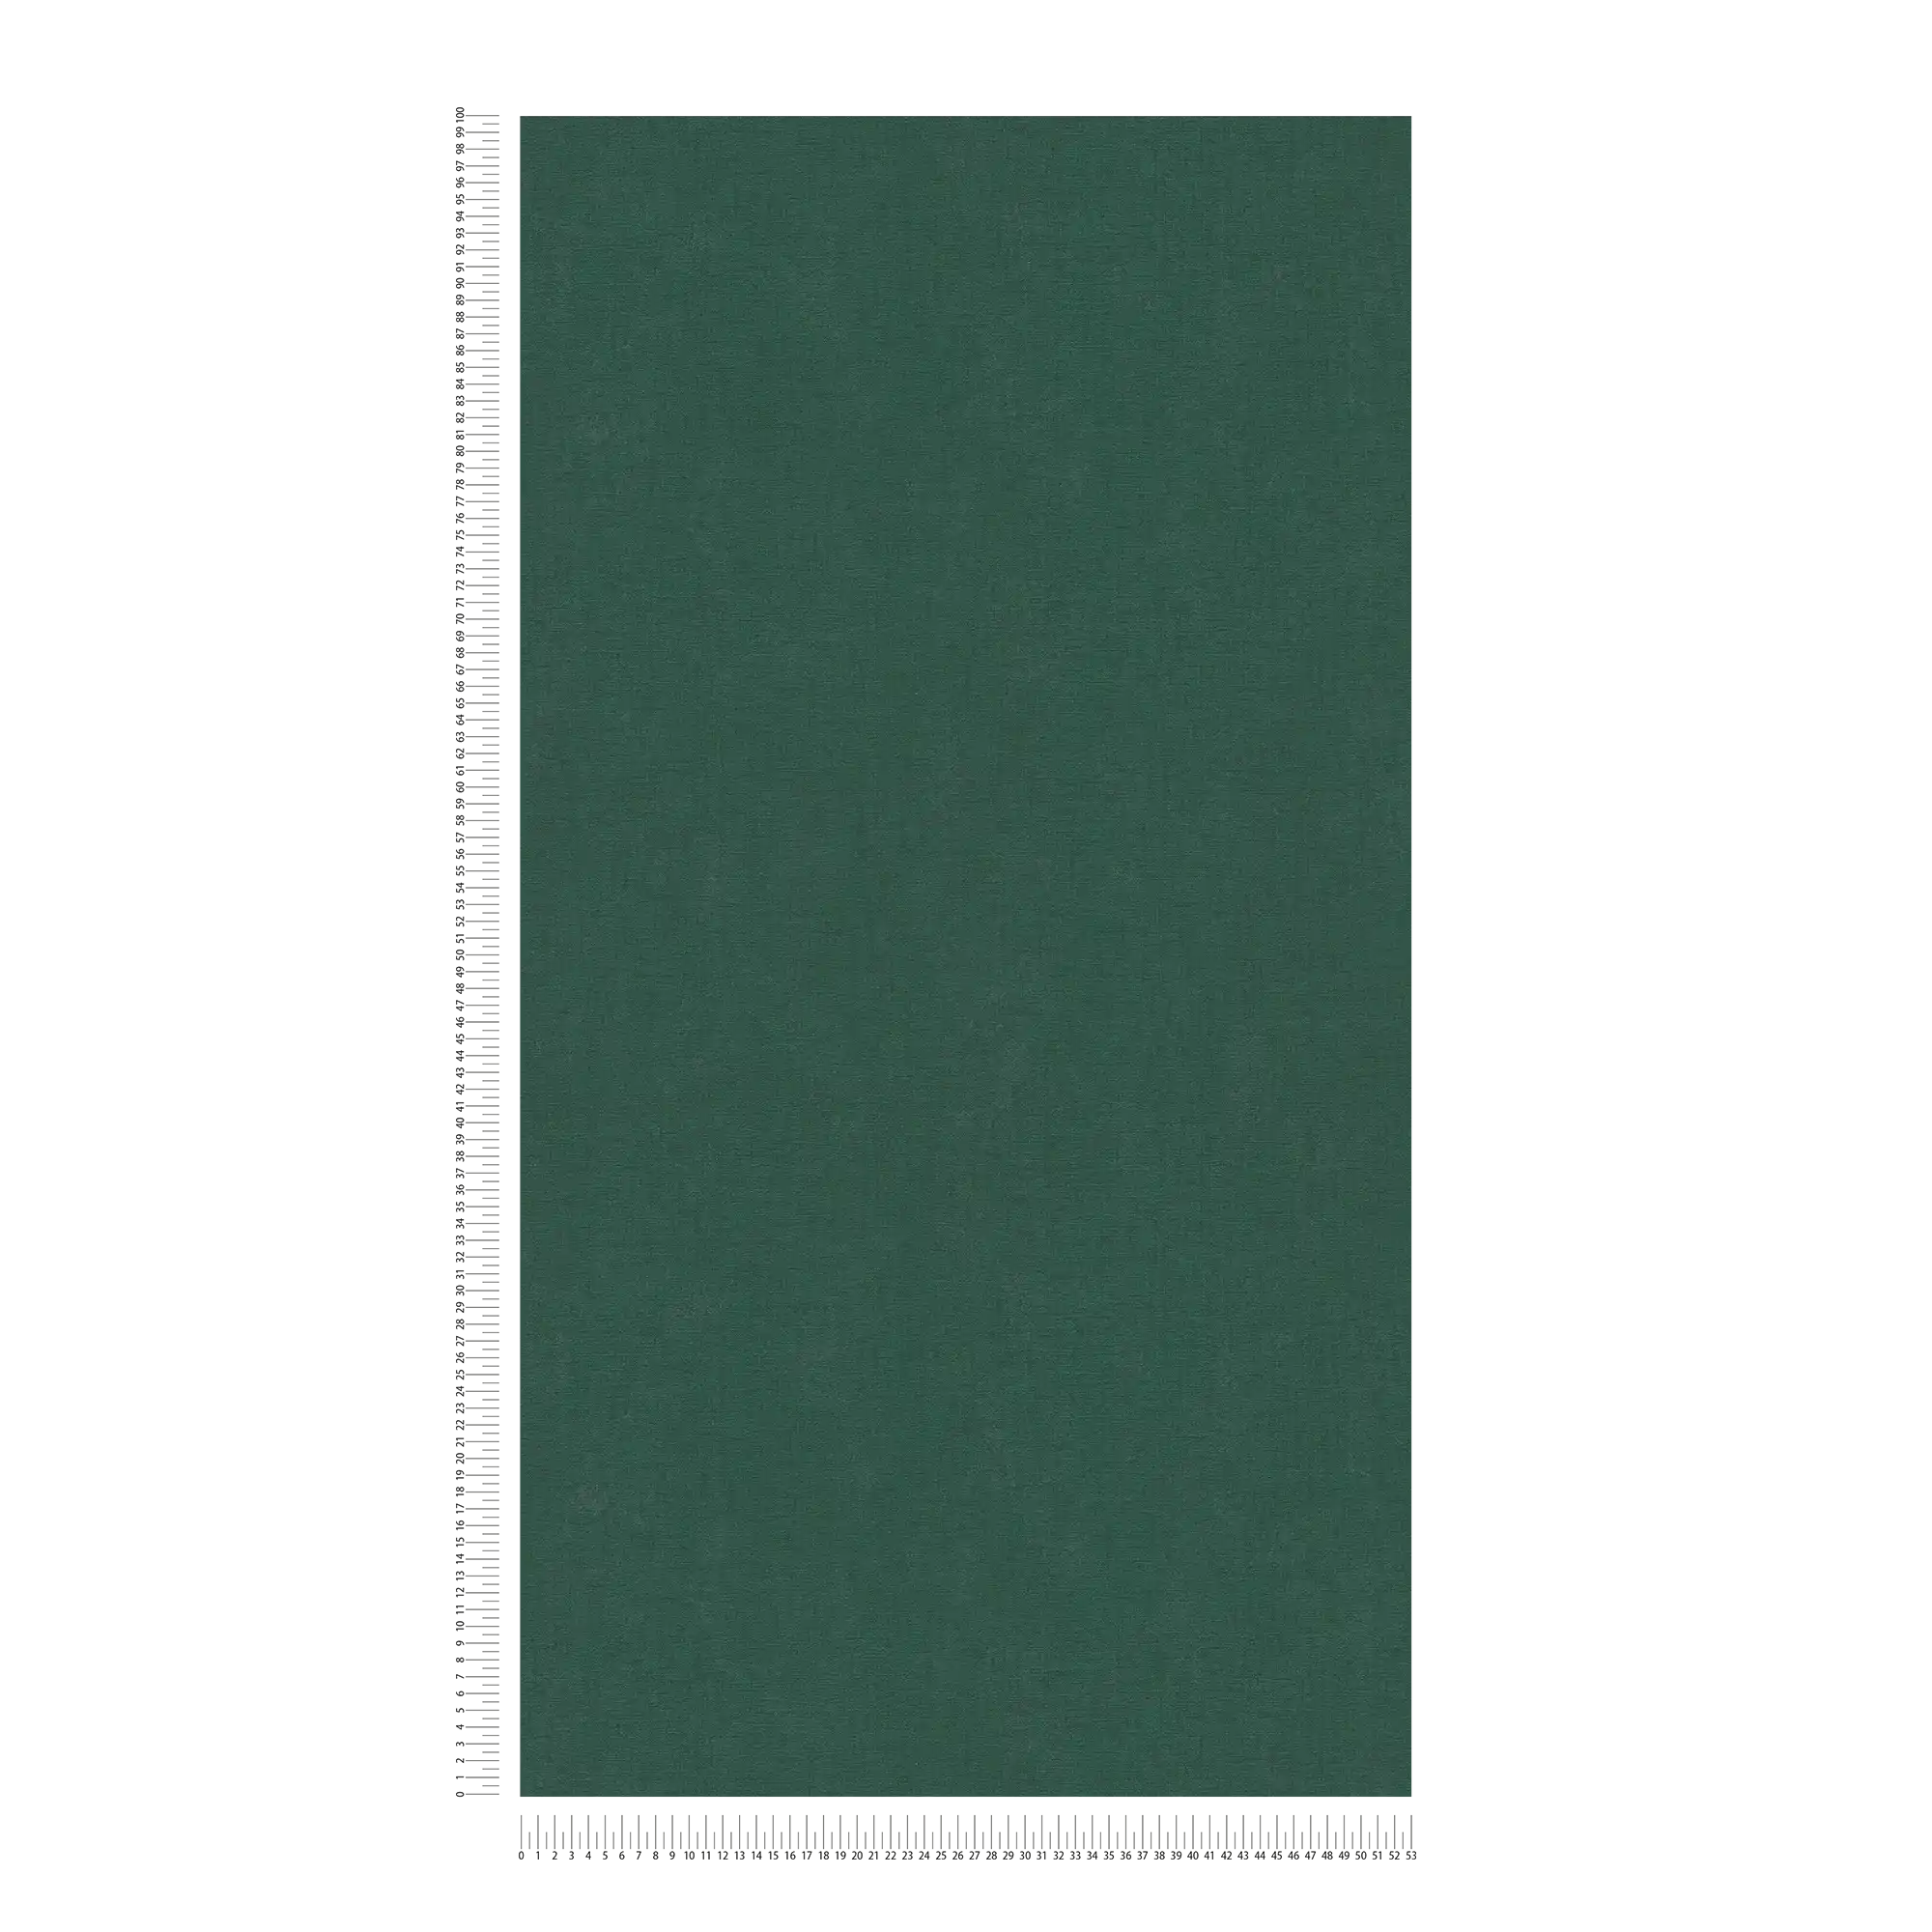             Eenkleurig vliesbehang met een lichte textuur - groen, donkergroen
        